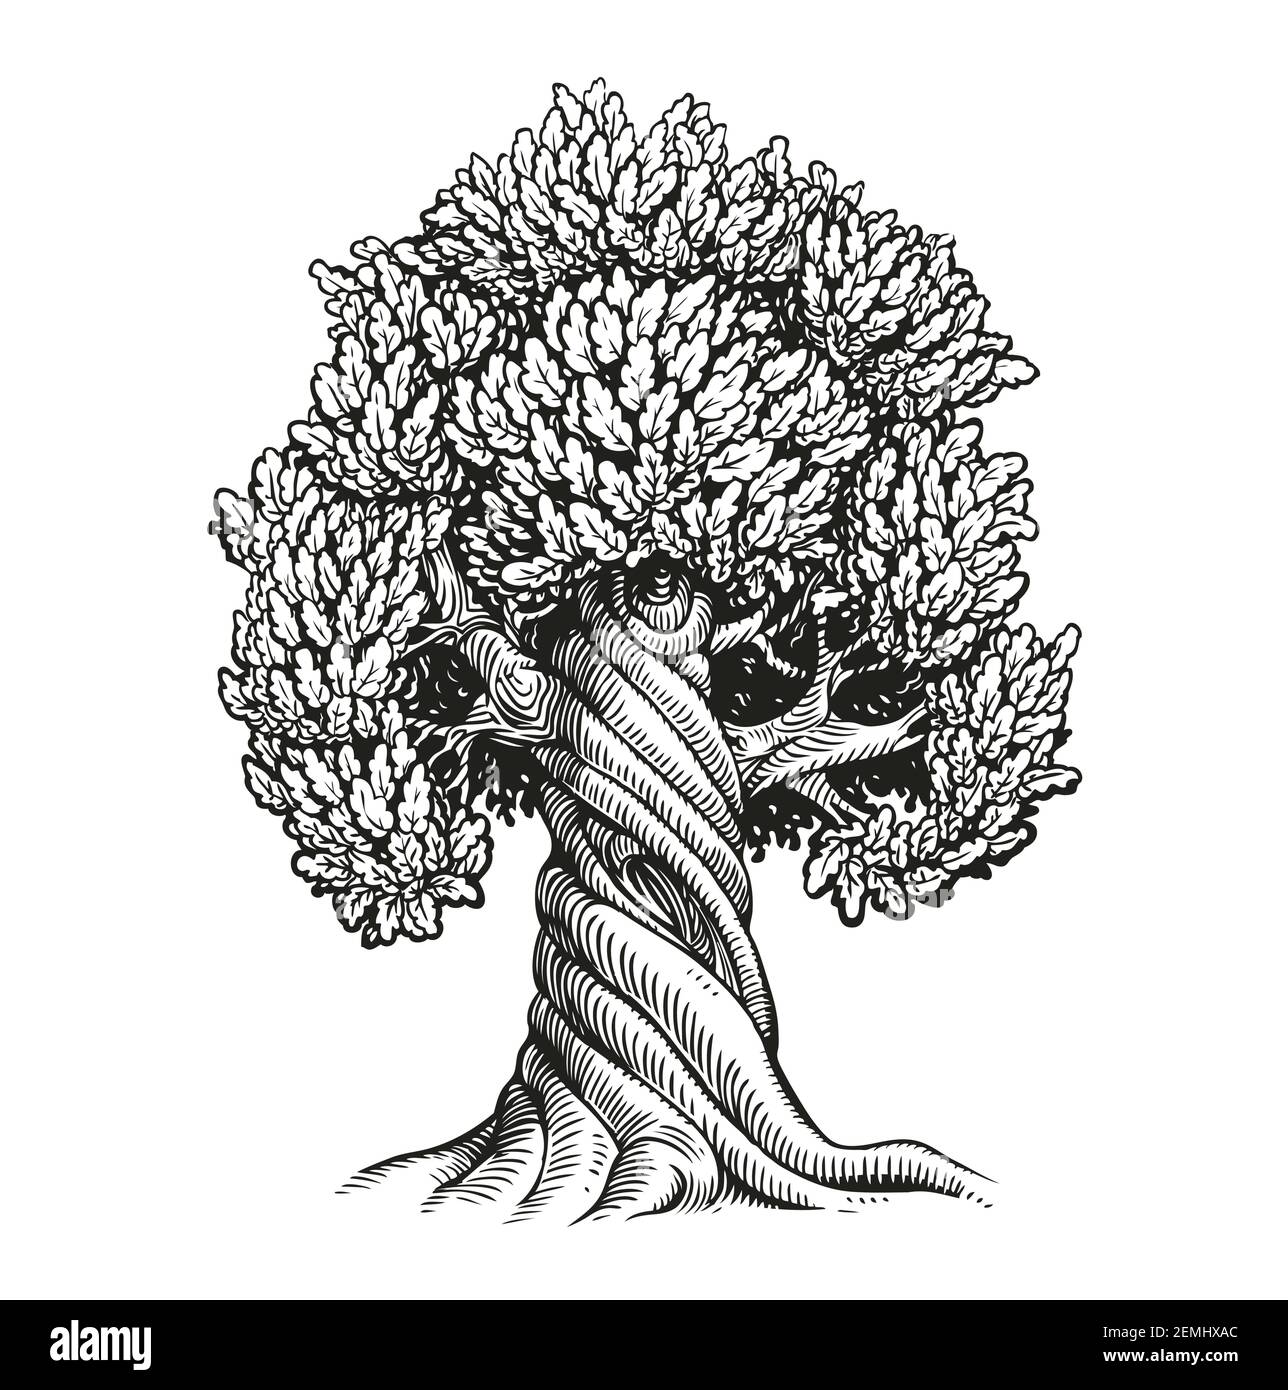 Chêne d'arbre. Illustration vectorielle d'esquisse vintage dessinée à la main Illustration de Vecteur